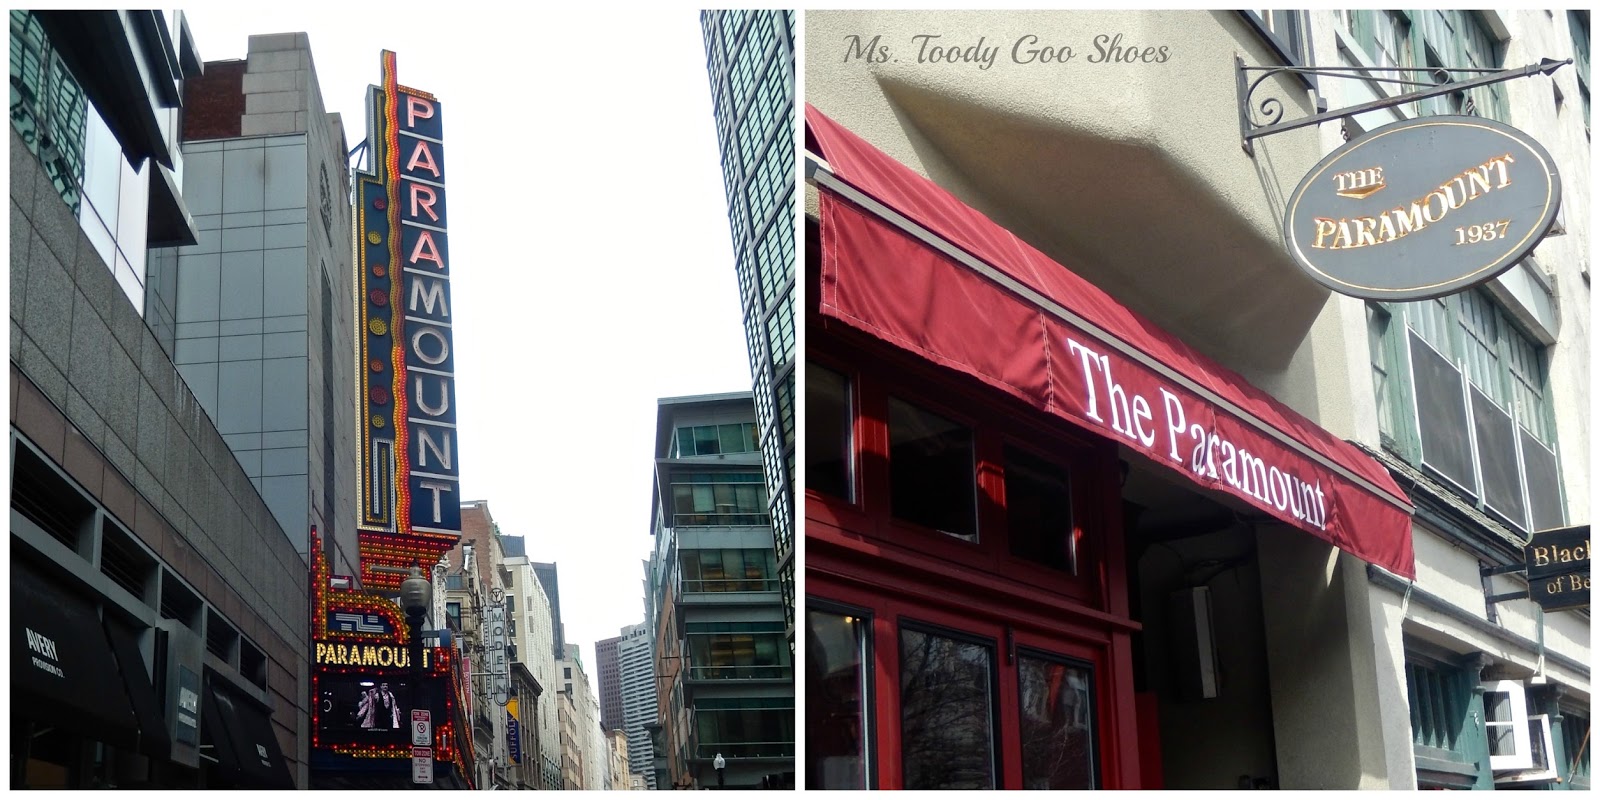 Boston  -- Ms. Toody Goo Shoes